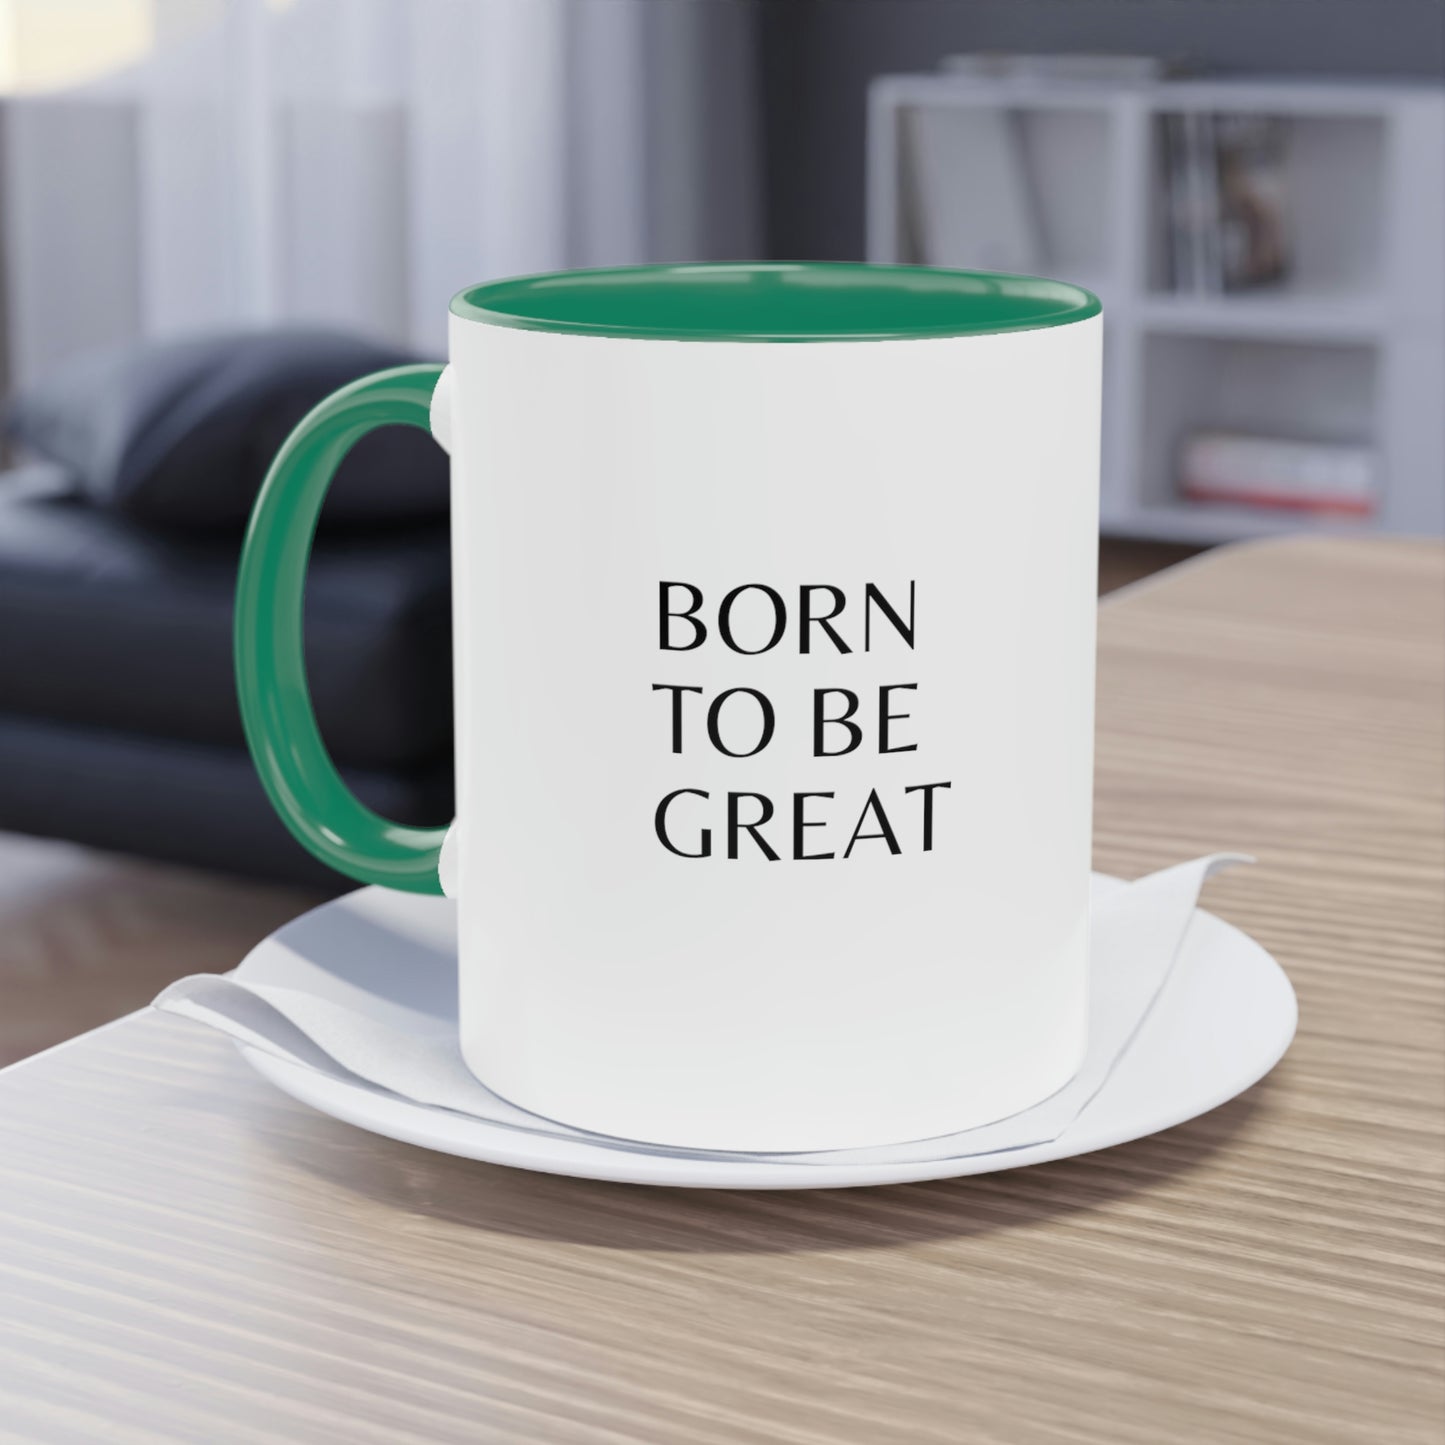 "Born To Be Great" Coffee Mug 11oz.